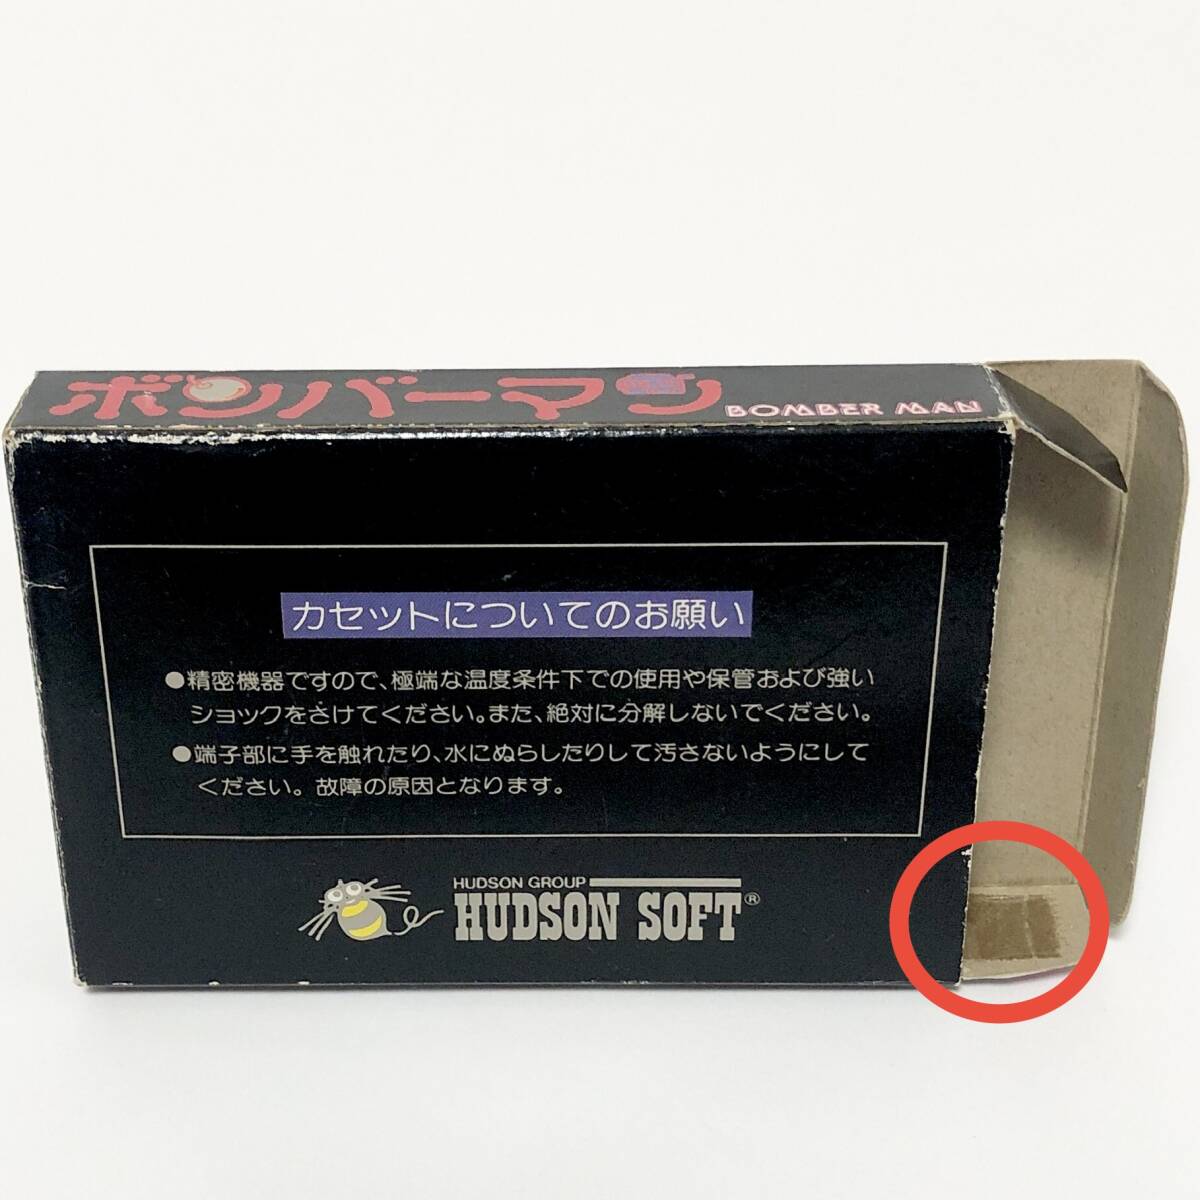 ファミコン ボンバーマン 箱説付き 痛みあり ハドソン レトロゲーム Nintendo Famicom Bomber Man CIB Tested Hudson Soft_画像3